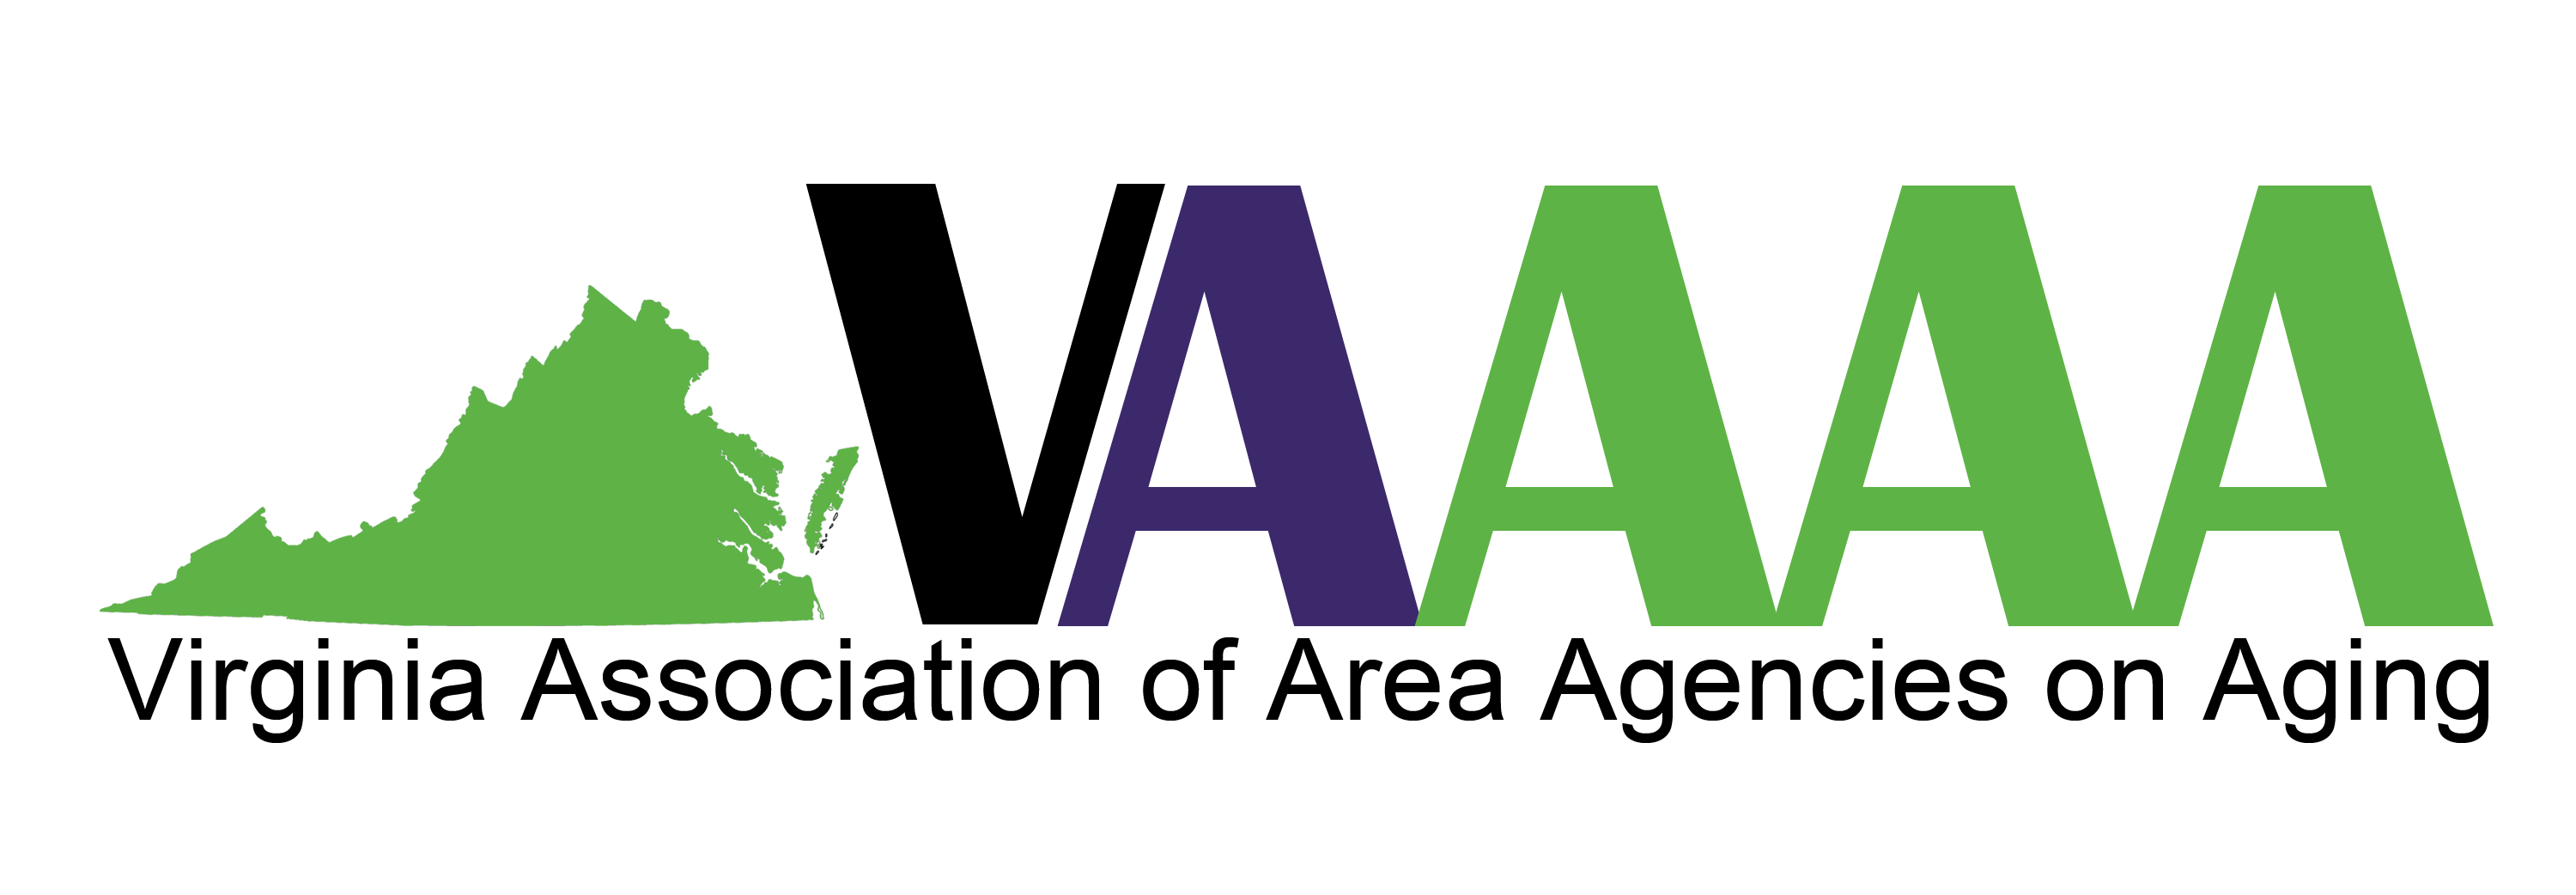 VAAAA - Virginia Association of Area Agencies on Aging